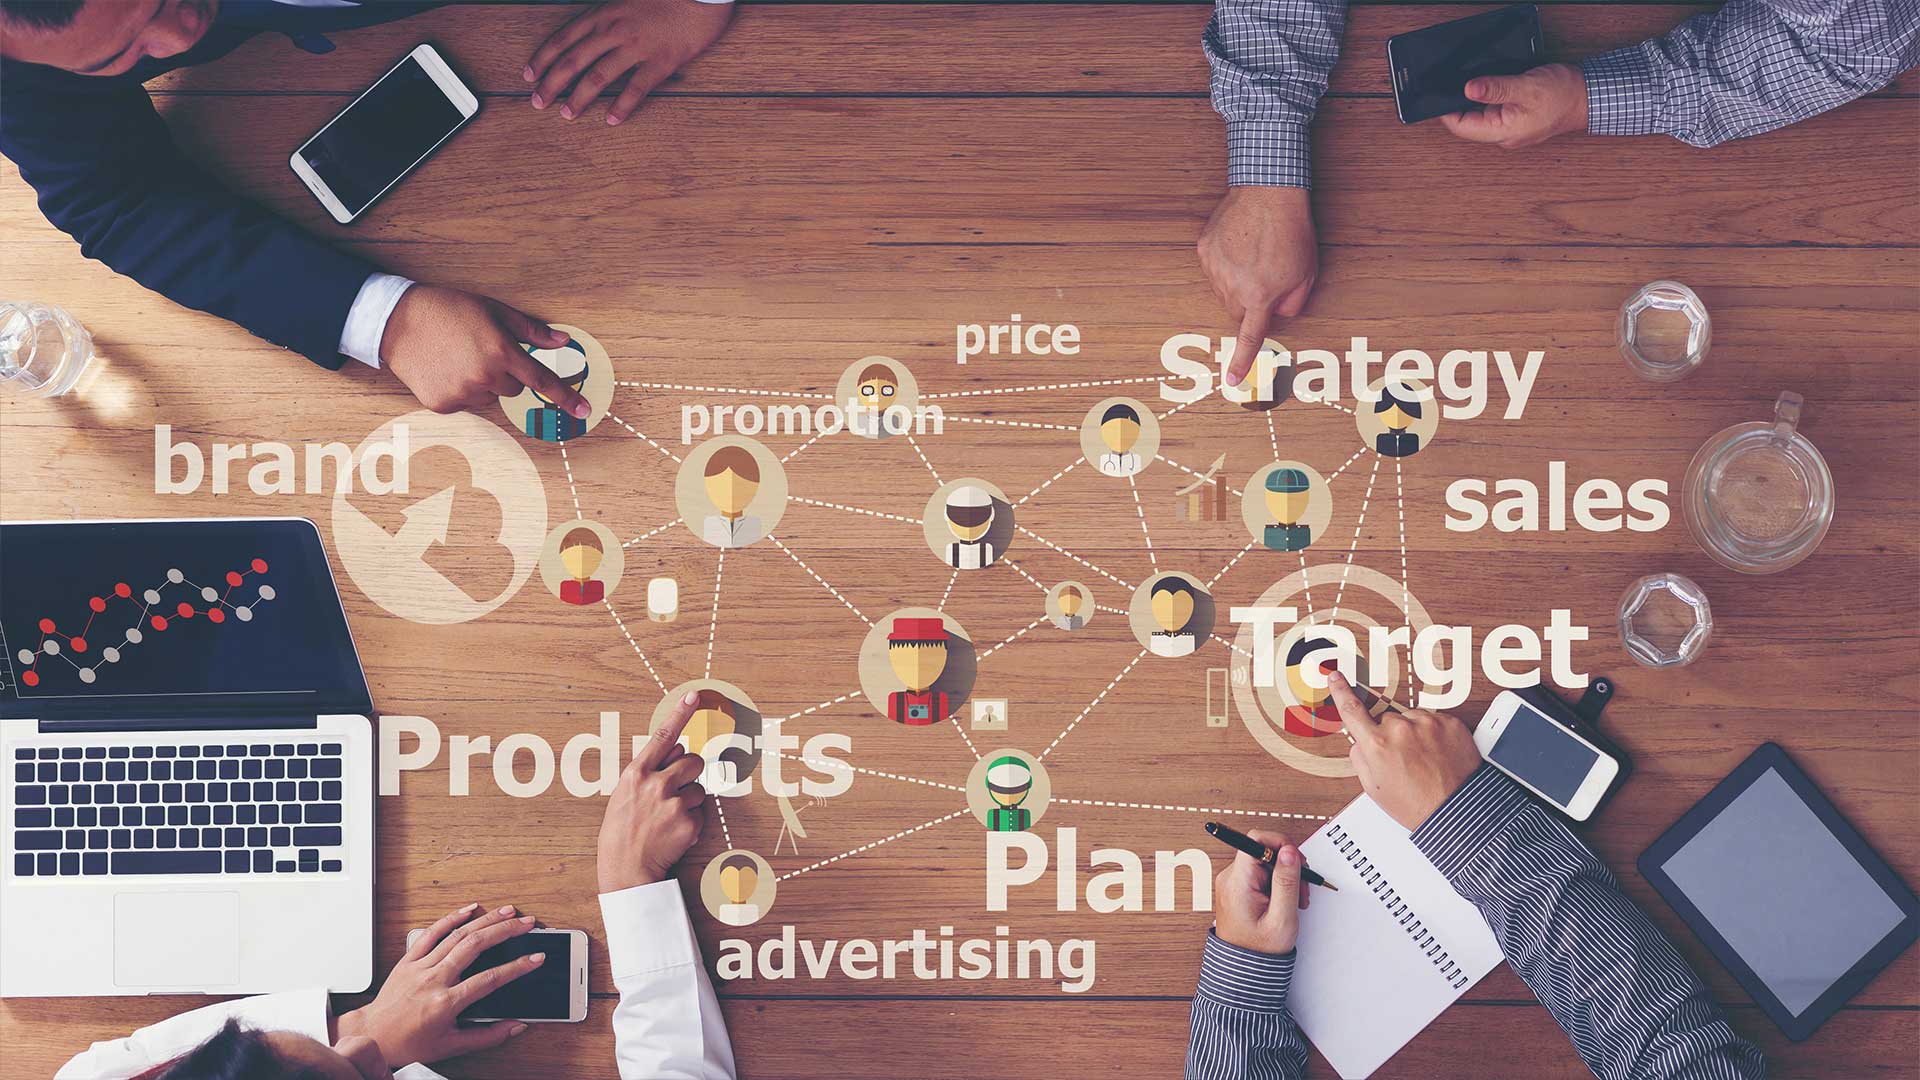 Image de fond représentant le marketing et le management - personnes autour d'une table discutant marketing et management